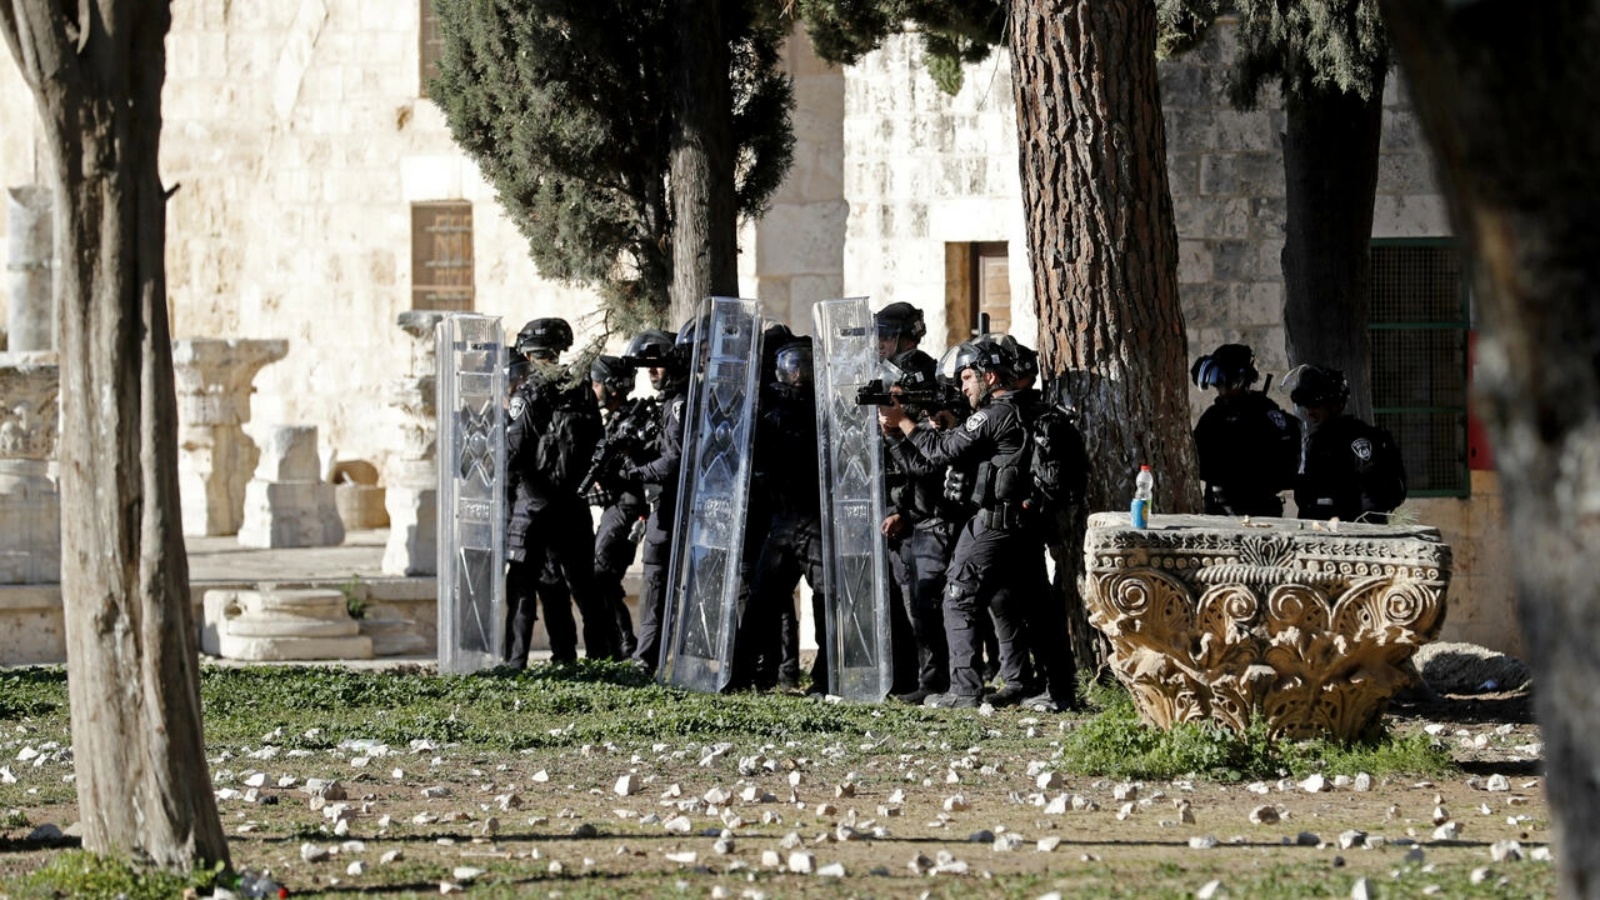 اشتباكات بين قوات الأمن وفلسطينيين في باحة المسجد الأقصى في القدس الشرقية المحتلة في 15 أبريل 2022